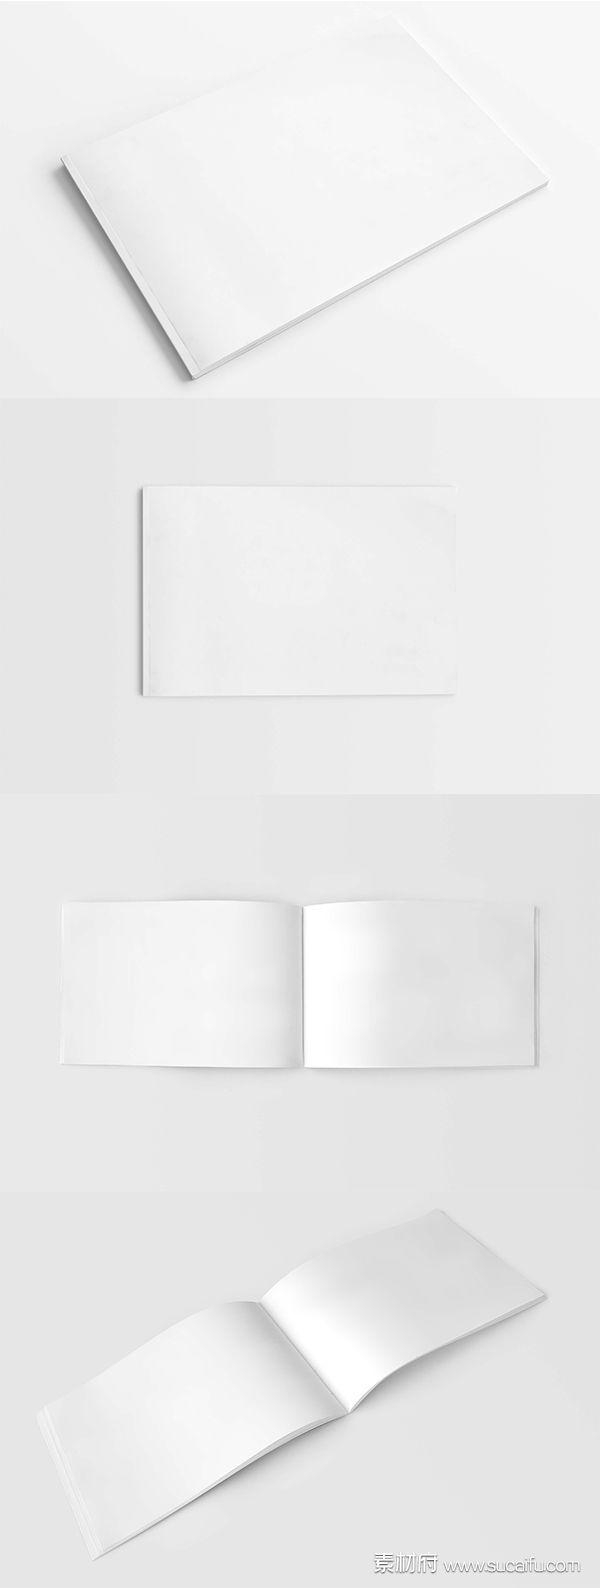 一套横版的空白画册展示模板PSD分层文件